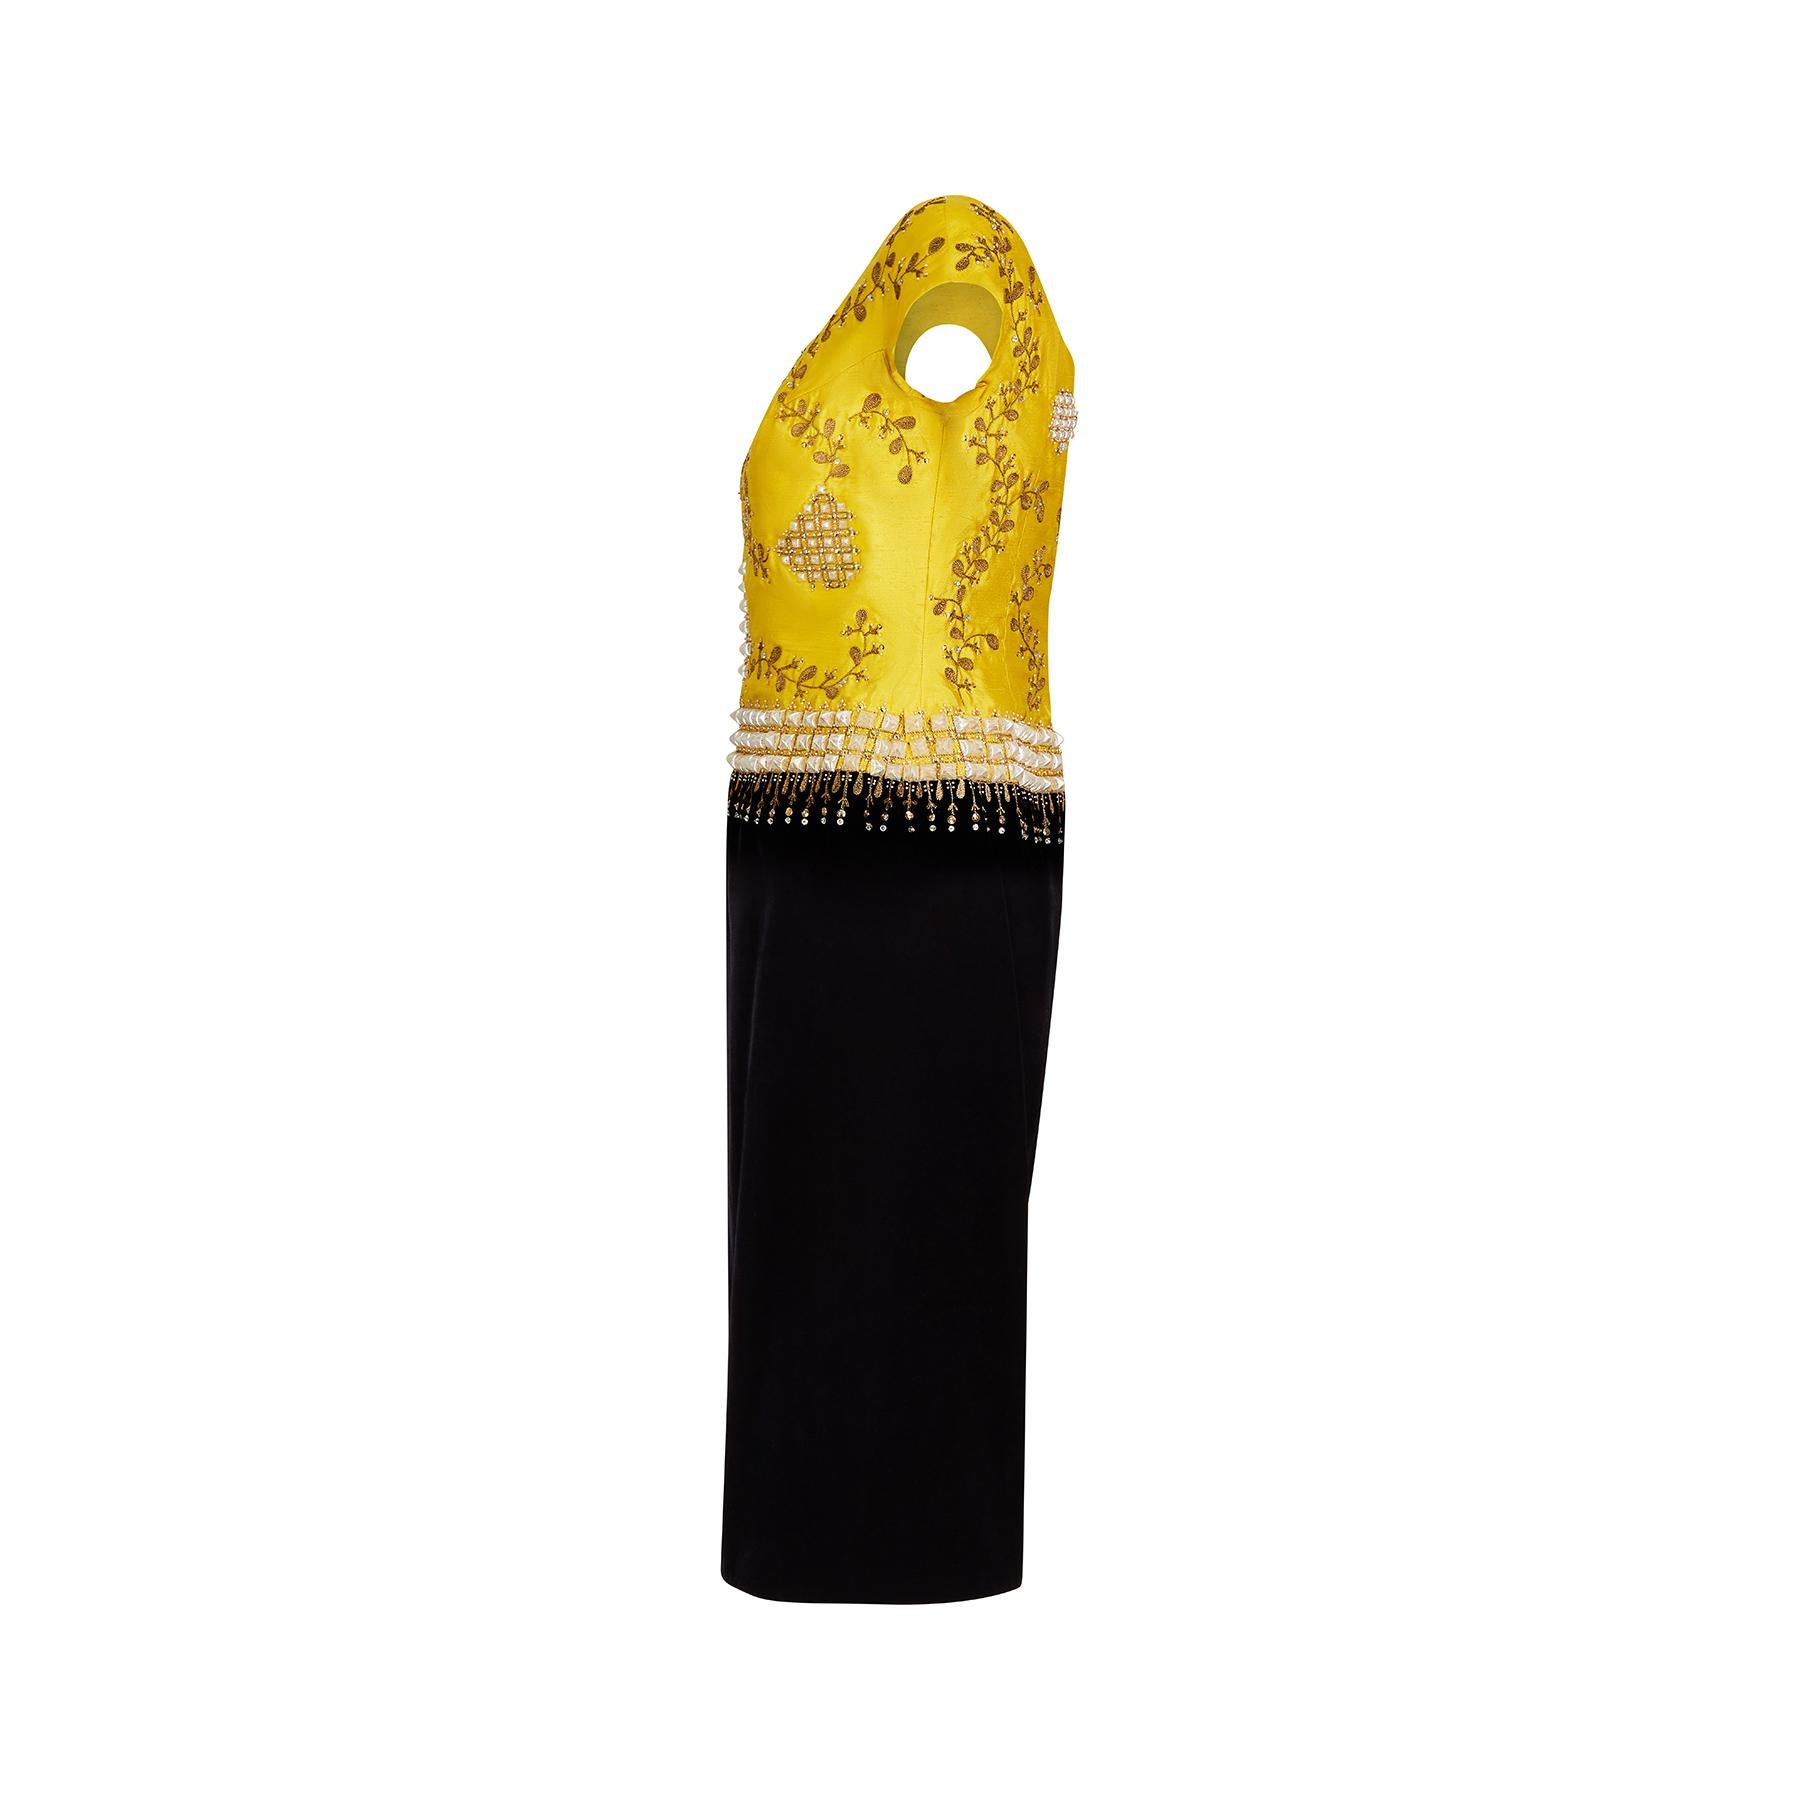 robe de cocktail des années 1960 en velours noir et soie brute jaune, signée Eliane Montigny of Paris.  Il s'agit d'une robe de soirée vraiment remarquable, d'une qualité de fabrication extraordinaire et réalisée selon les normes de haute couture